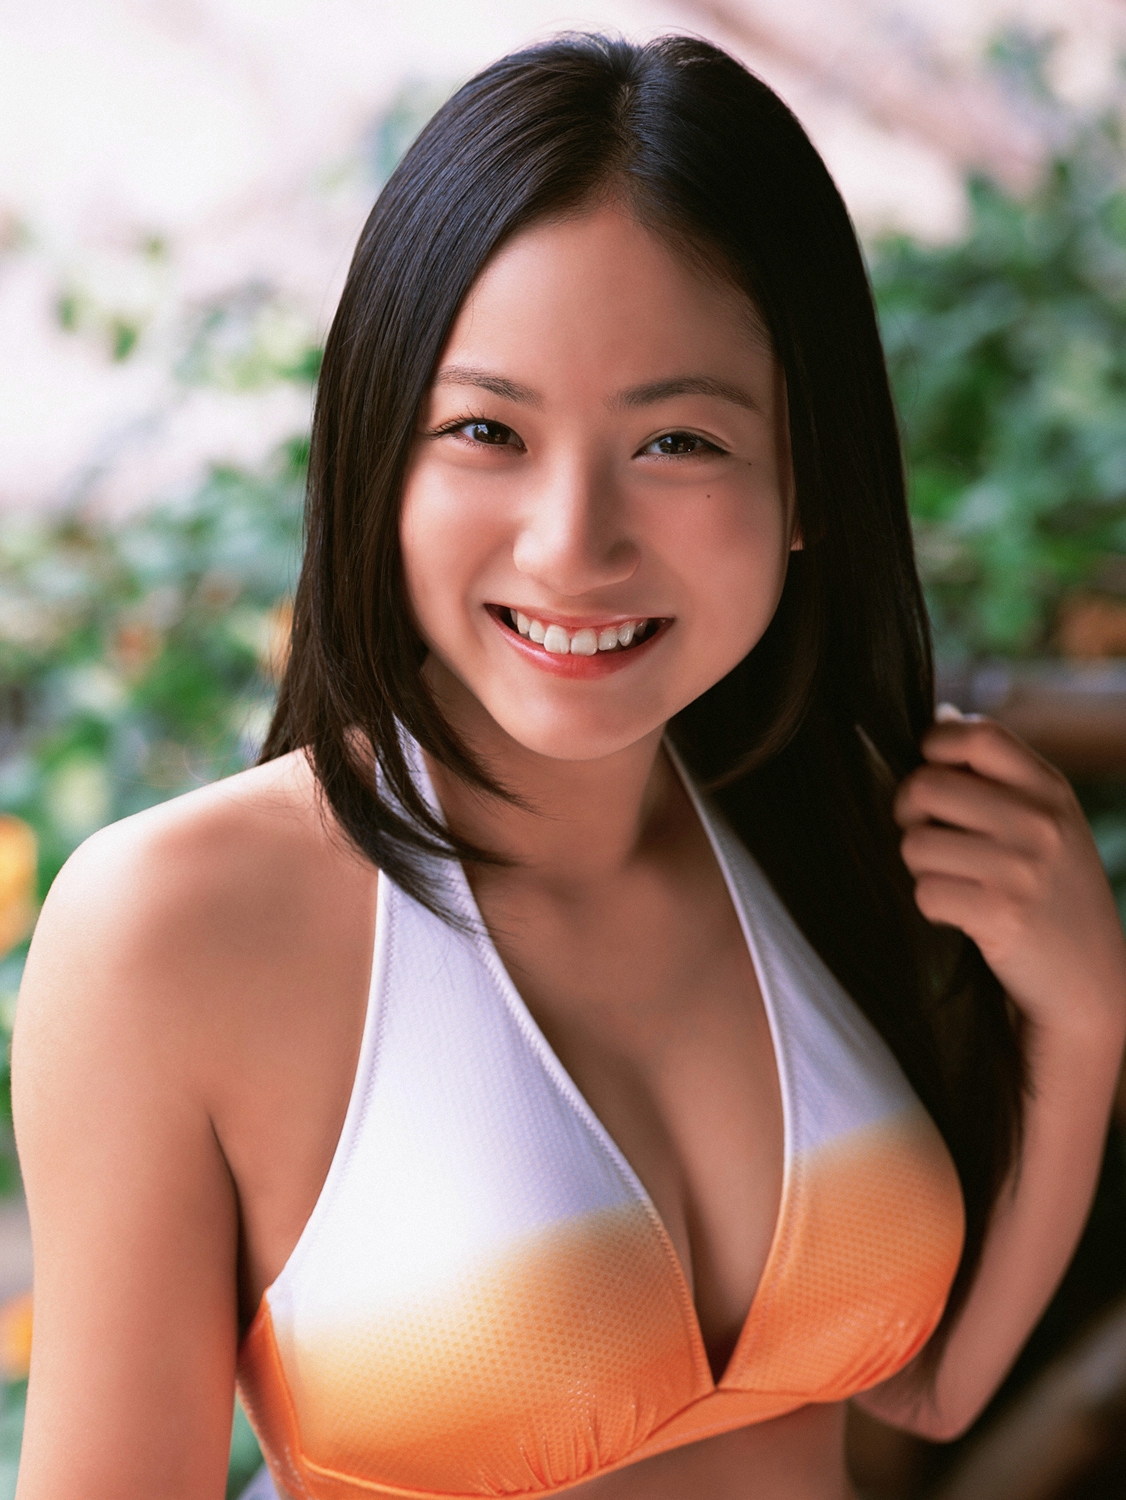 Saaya Irie 入江紗綾 in Cute Orange White Bikini